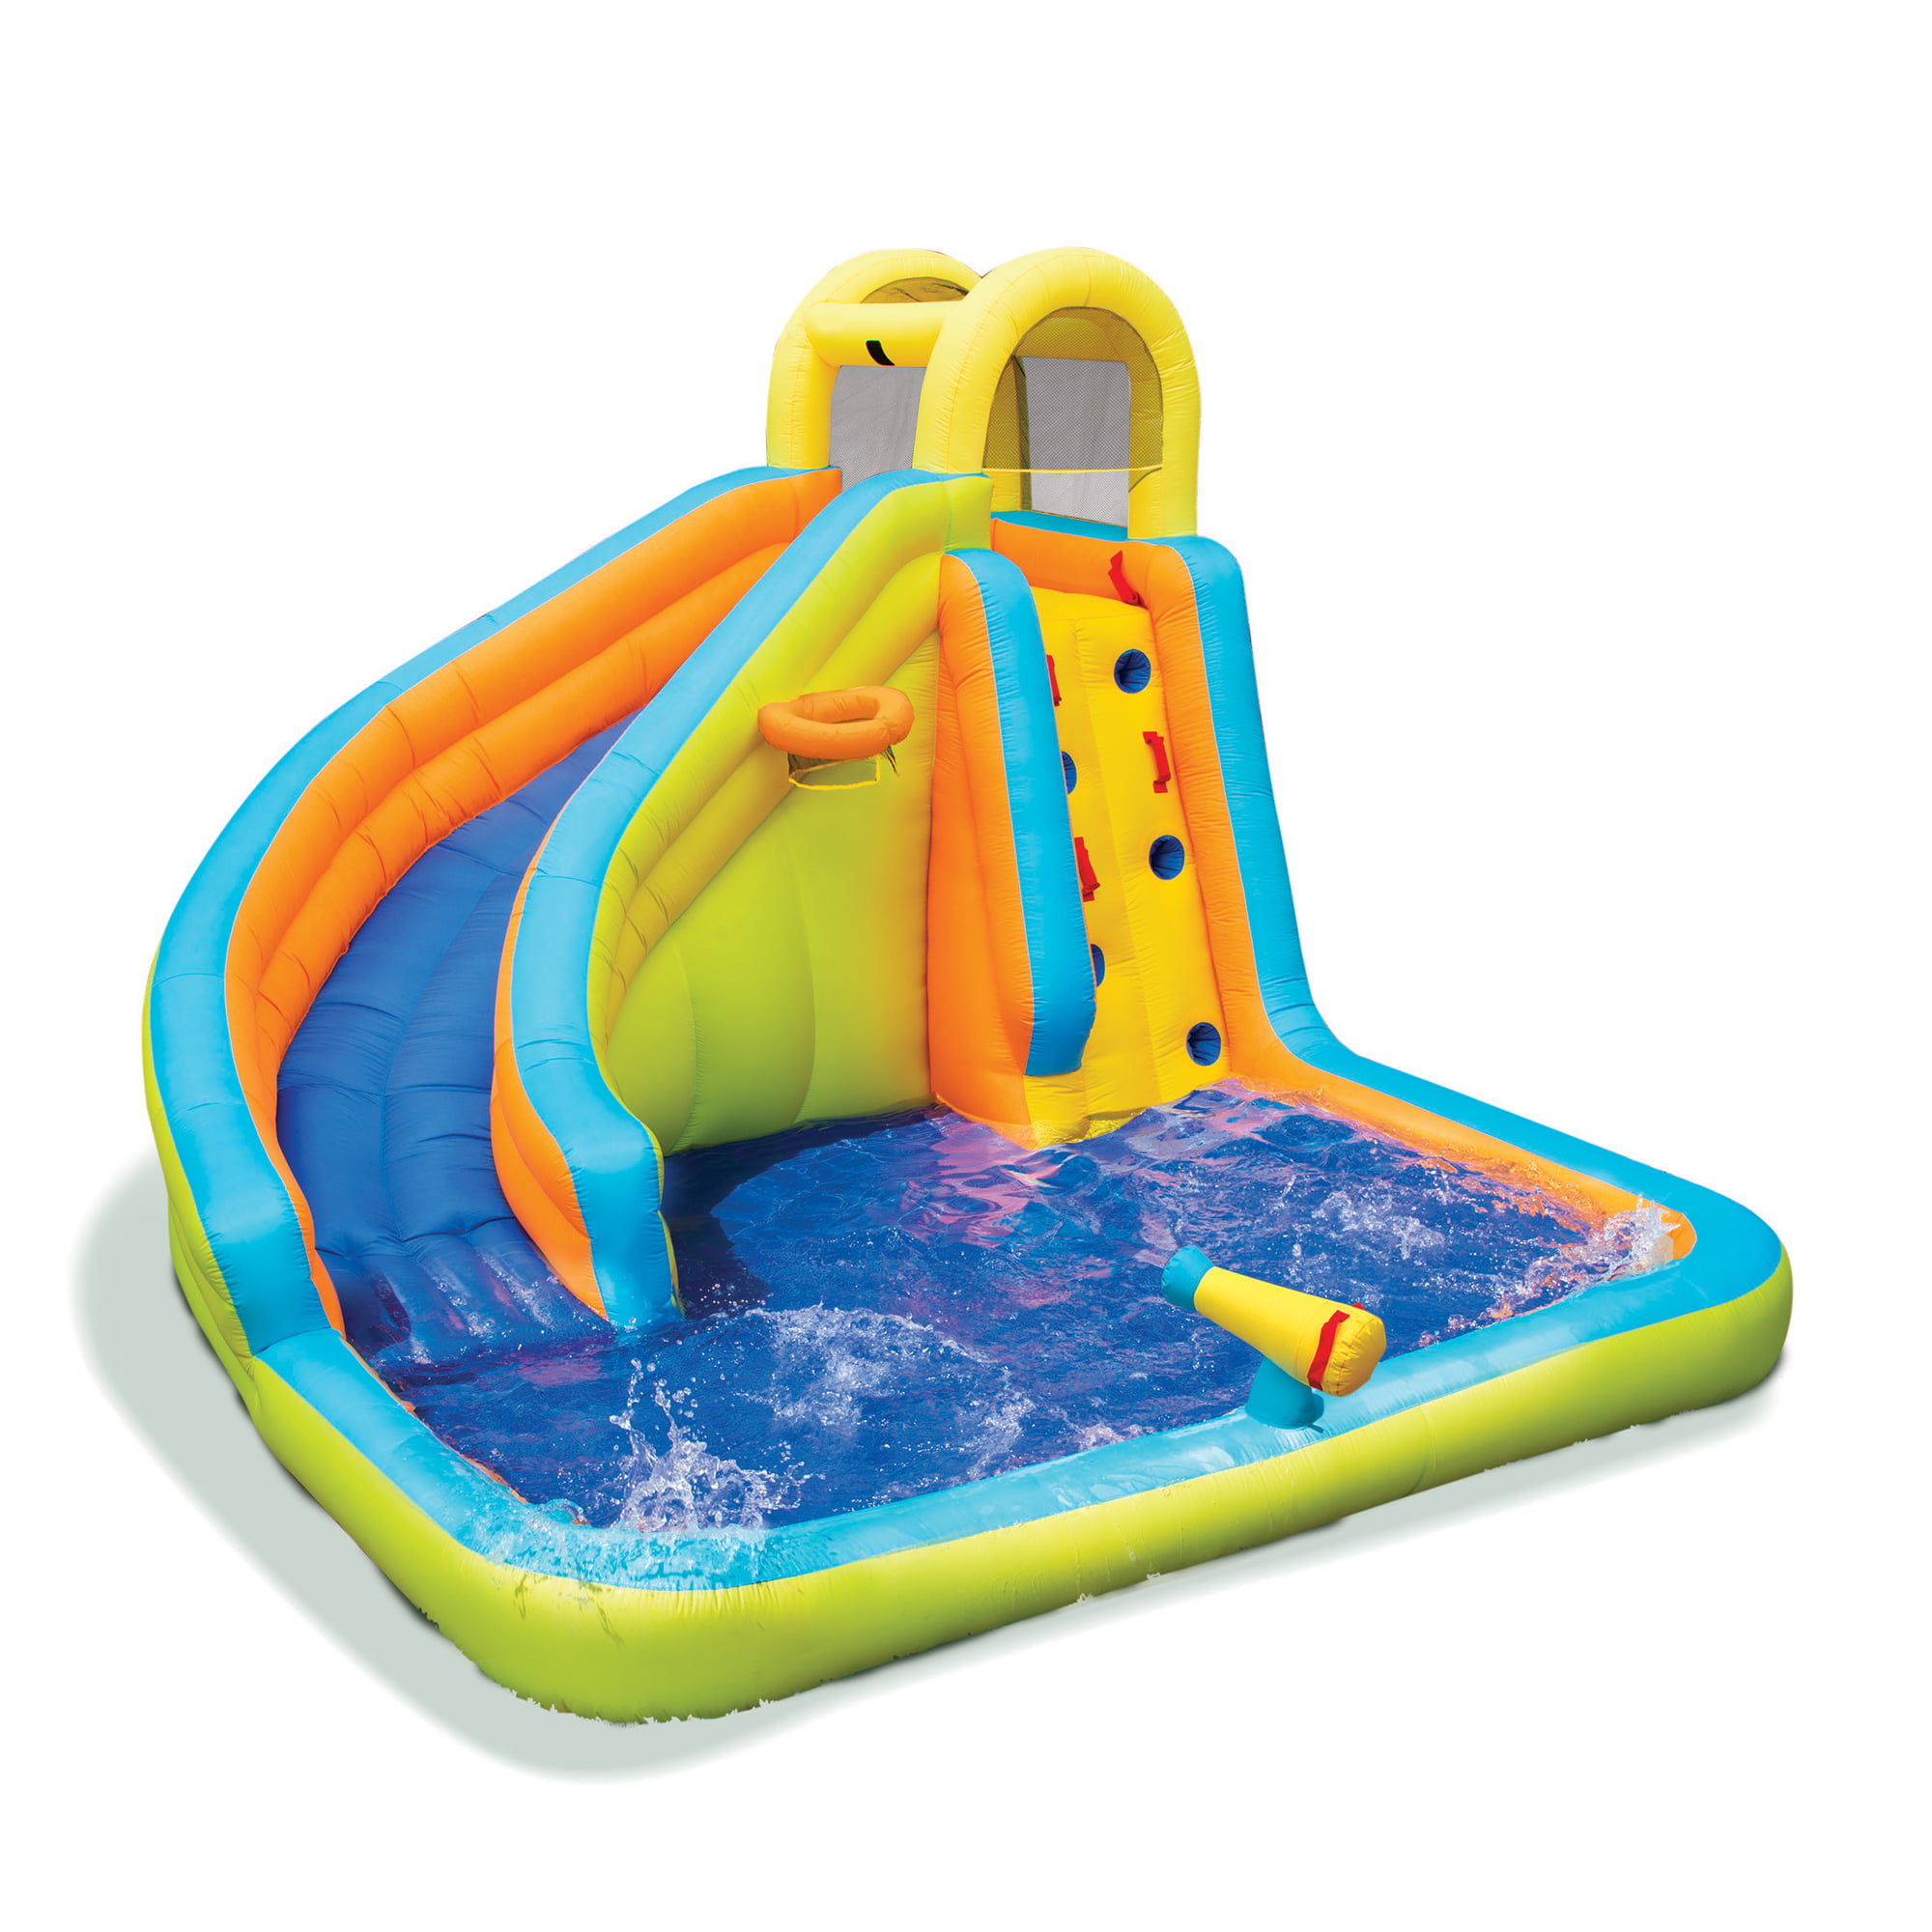 Inflatable Water Slide Outdoor Kids Toy Slip N Slide Backyard Play Spray Splash 